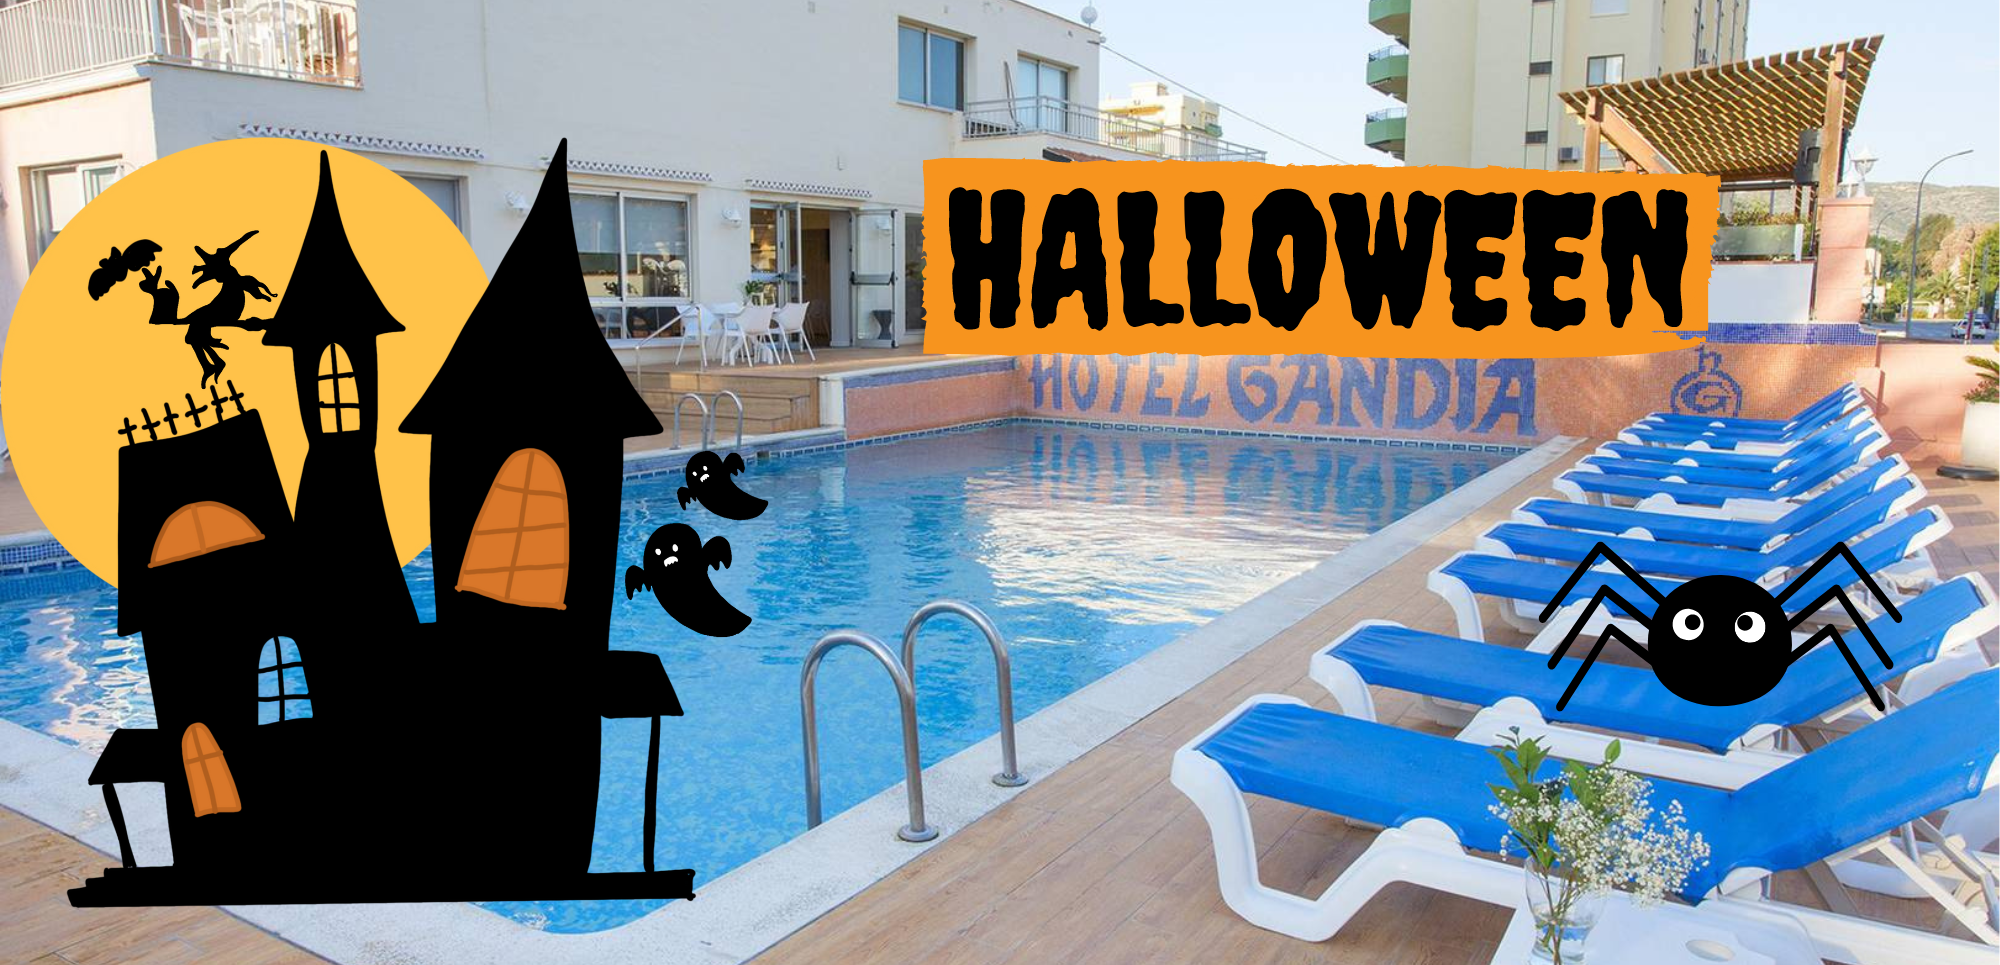 Escapada Halloween «Hotel Gandía Playa 3*» Playa de Gandía, Valencia